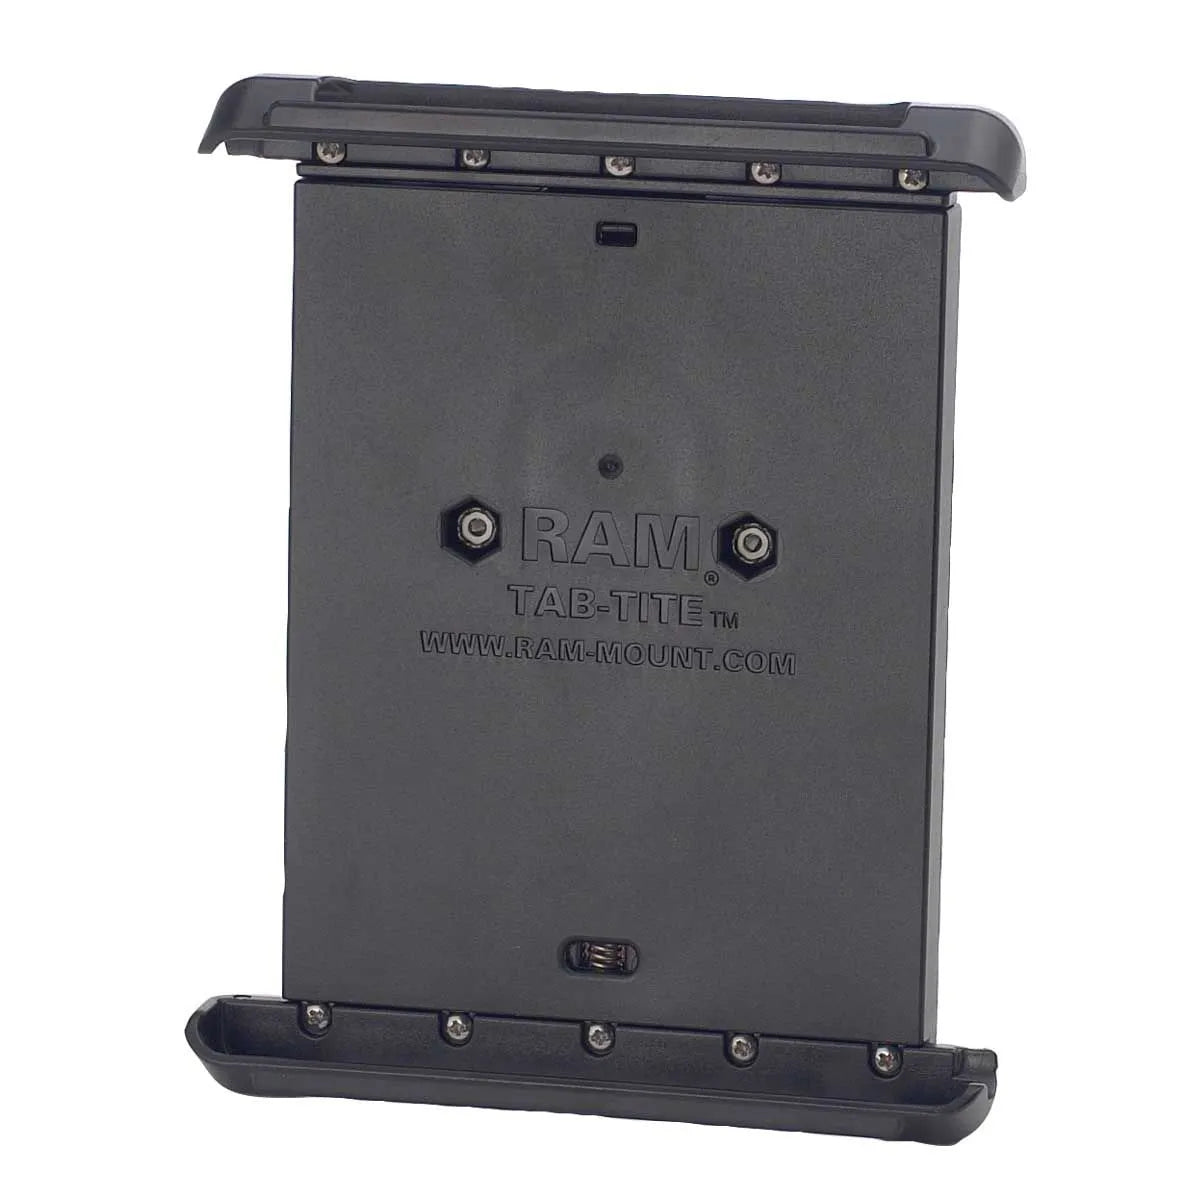 Ram Spring-loaded 7" Tablet Cradle